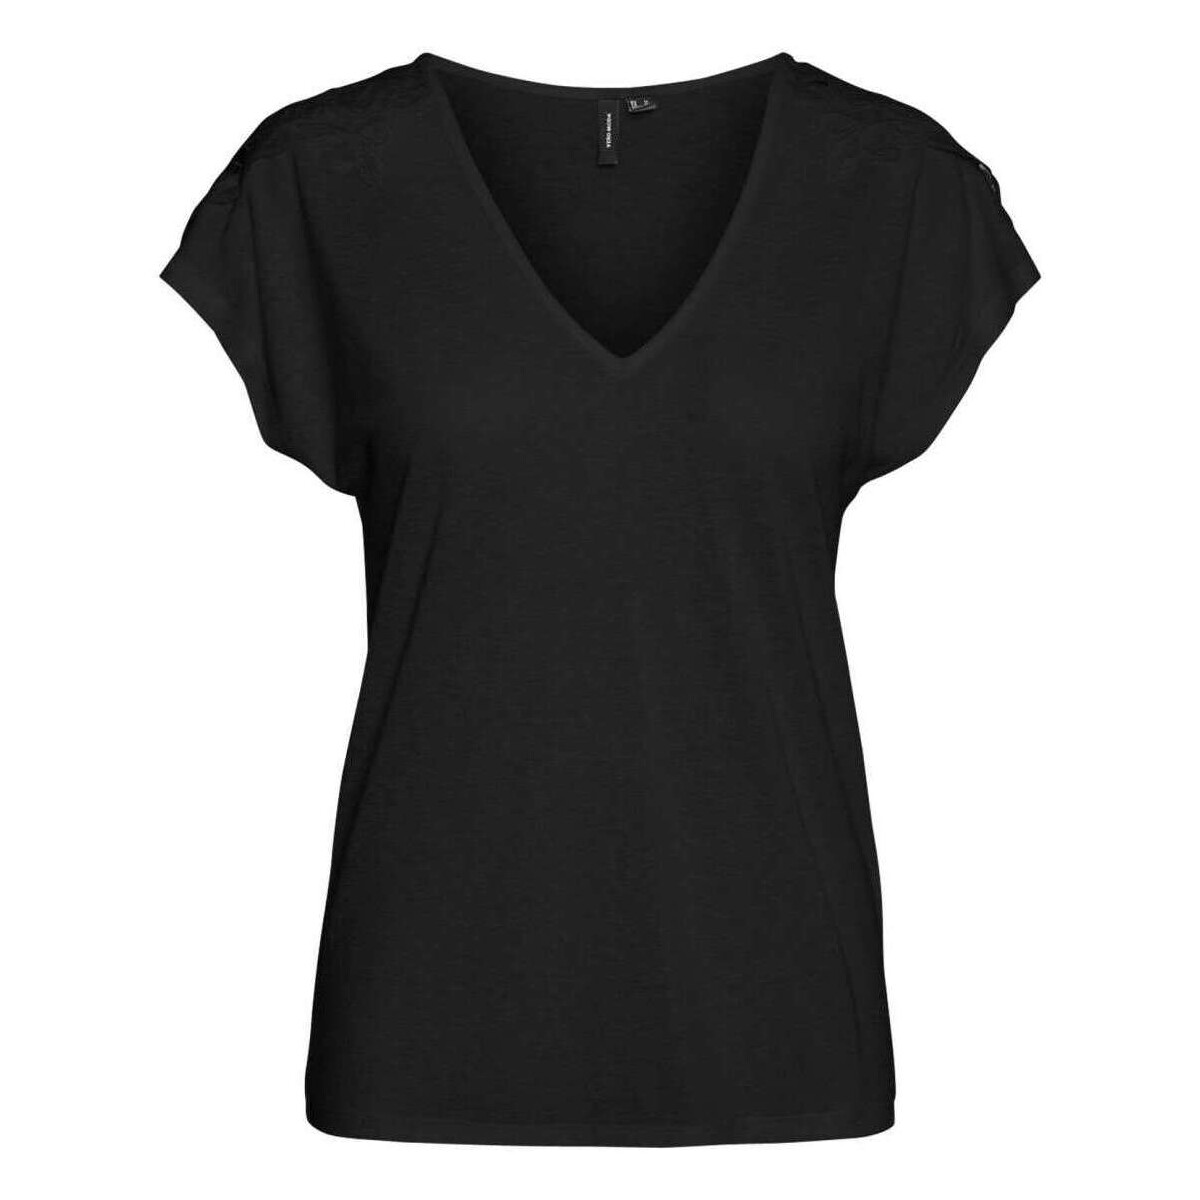 Vêtements Femme T-shirts manches courtes Vero Moda 160630VTPE24 Noir